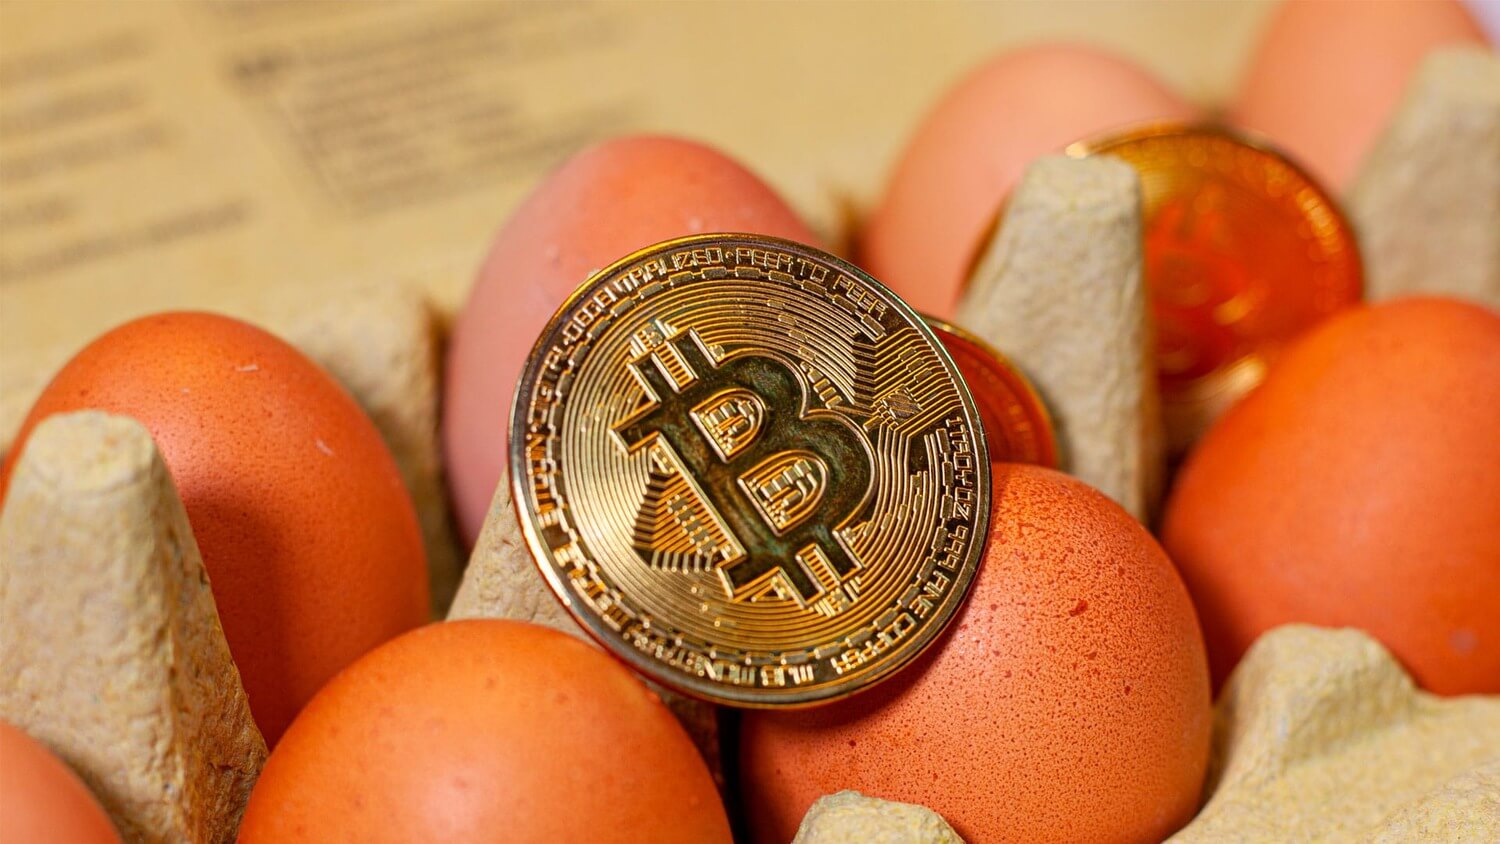 КРИПТОЖМЫХ / Цена яиц в Биткоине от банка, вывод крипты с PayPal и невероятная важность монет в мире. Банк показал цену яиц в Биткоине для его критики. Но любители криптовалют всё равно это оценили. Фото.